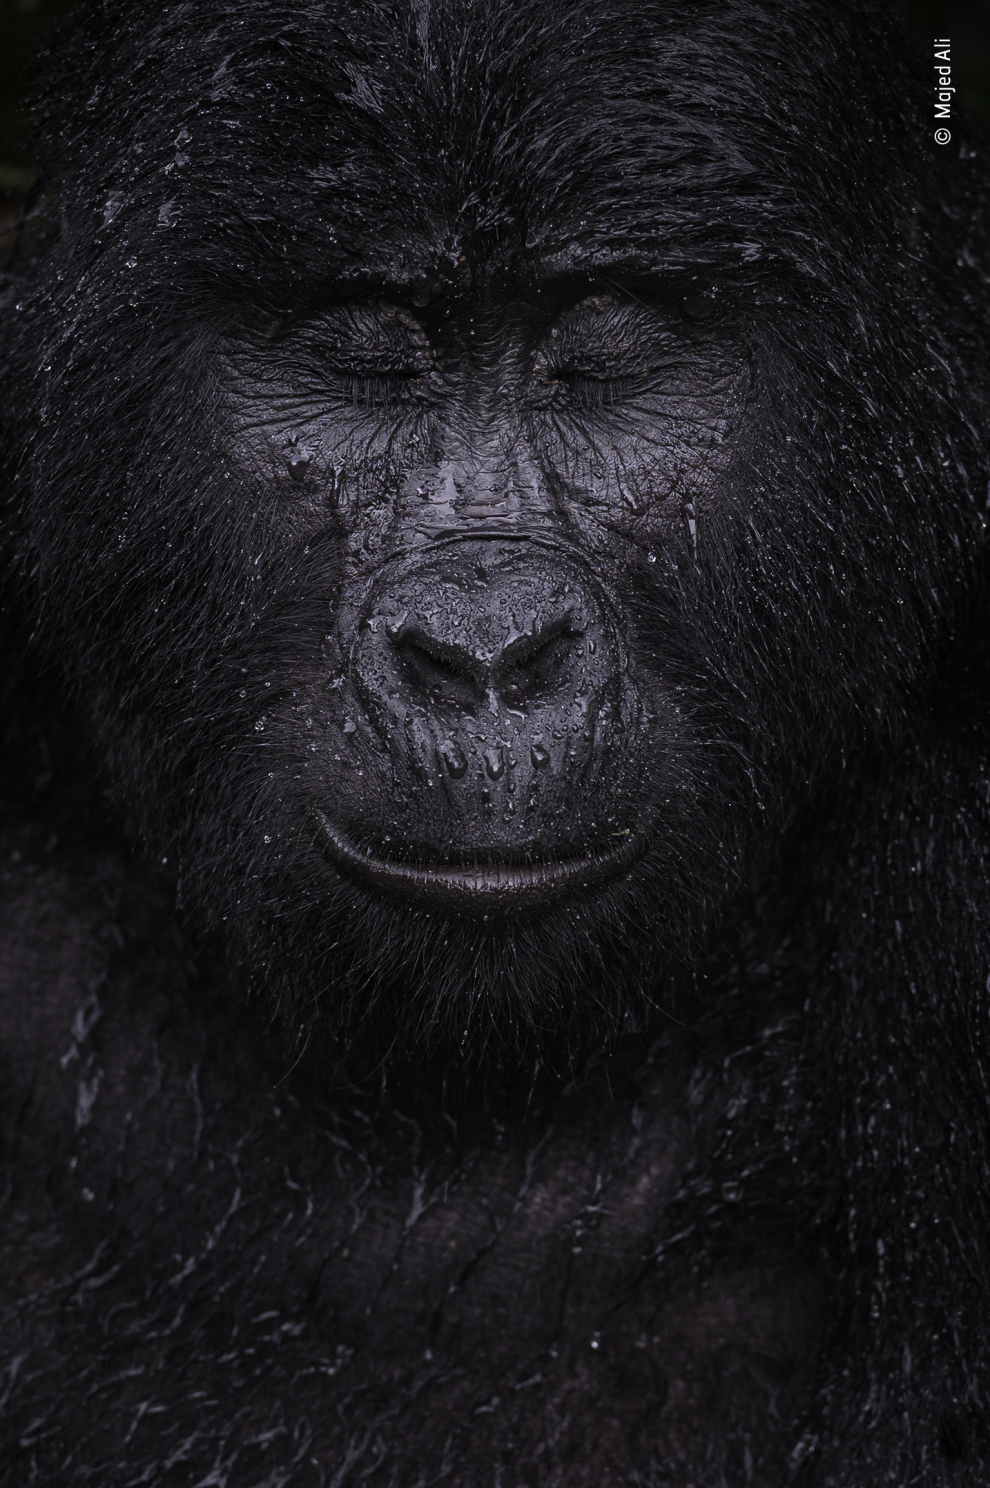 Ali caminó durante cuatro horas para encontrarse con Kibande, un gorila de montaña de casi 40 años. "Cuanto más subíamos, más calor y humedad se hacía", recuerda. Cuando comenzó a caer una lluvia refrescante, Kibande permaneció al aire libre, pareciendo disfrutar de la ducha. Los gorilas de montaña son una subespecie del gorila oriental y se encuentran en altitudes superiores a los 1.400 metros en dos poblaciones aisladas: en el volcán Virunga y en el área de Bwindi. Están en peligro por la pérdida de hábitat, las enfermedades y la caza furtiva.